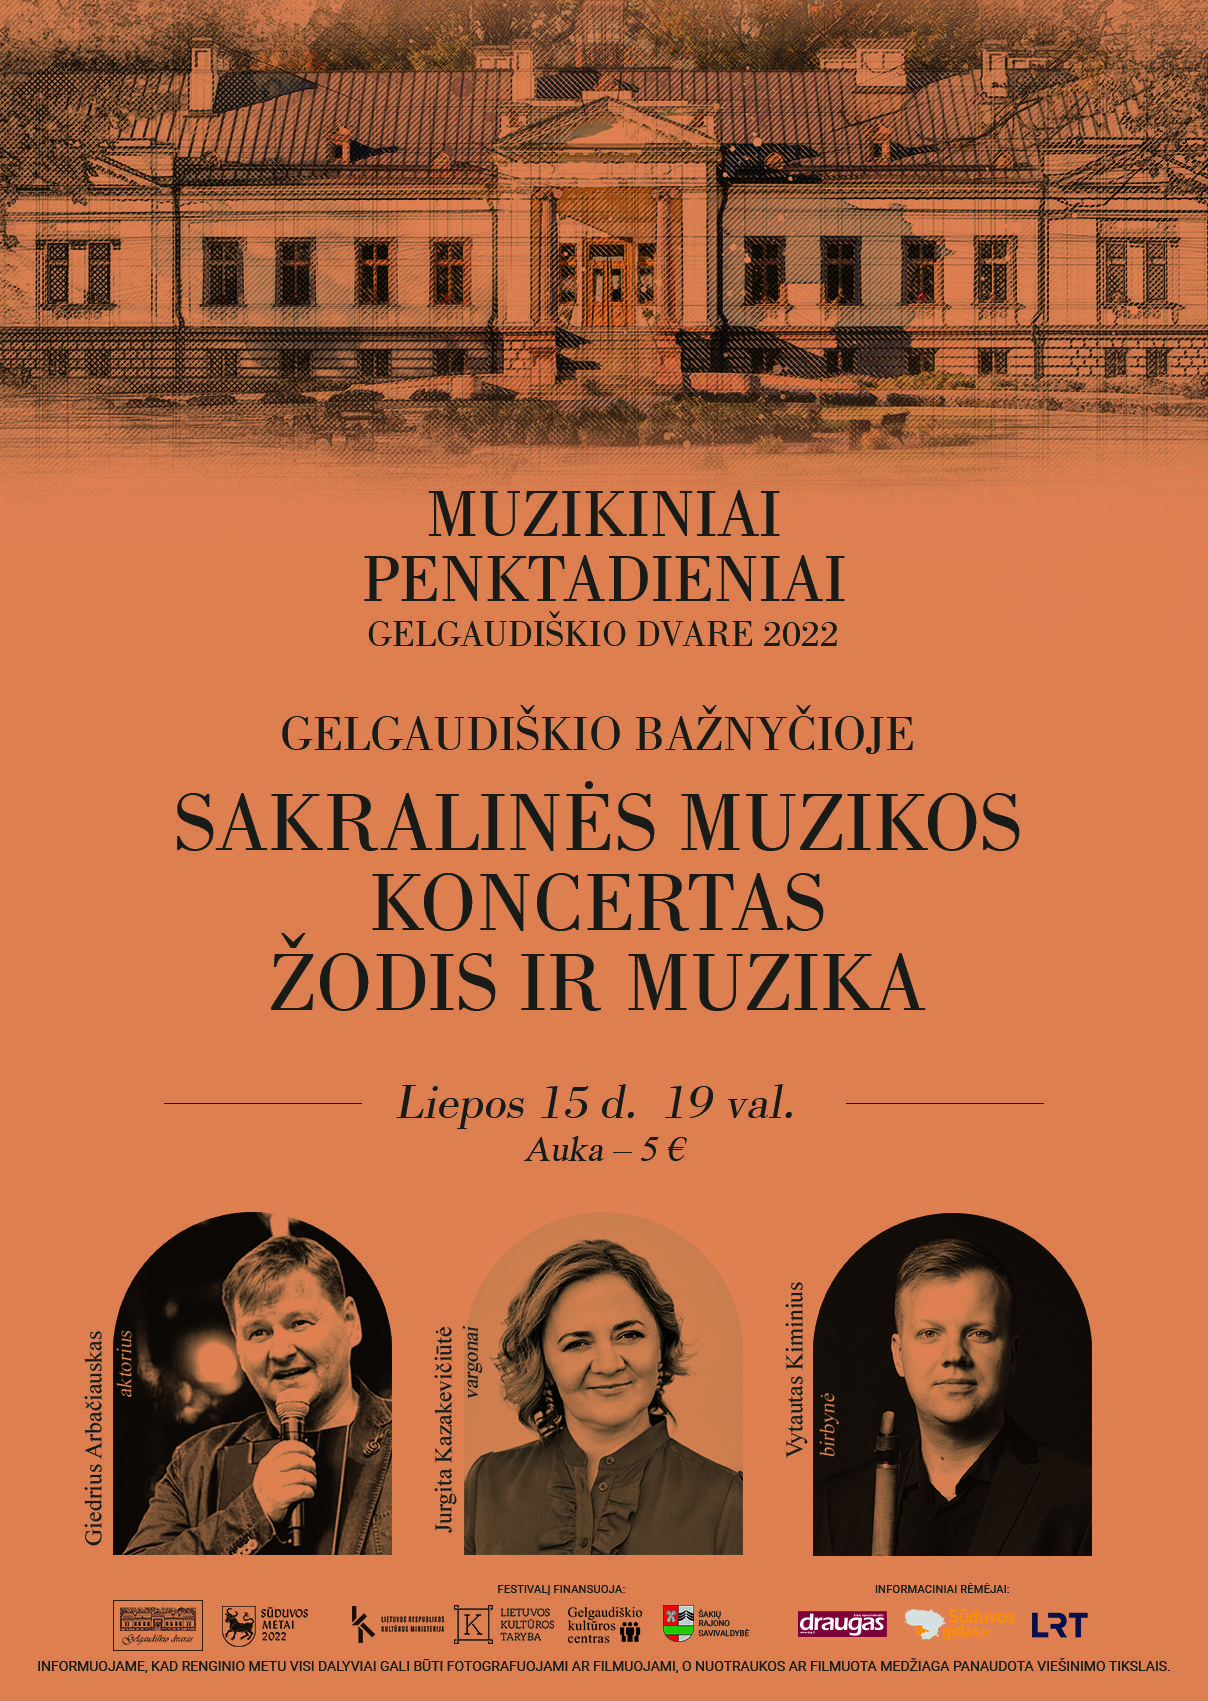 Sakralinės muzikos koncertas Gelgaudiškyje